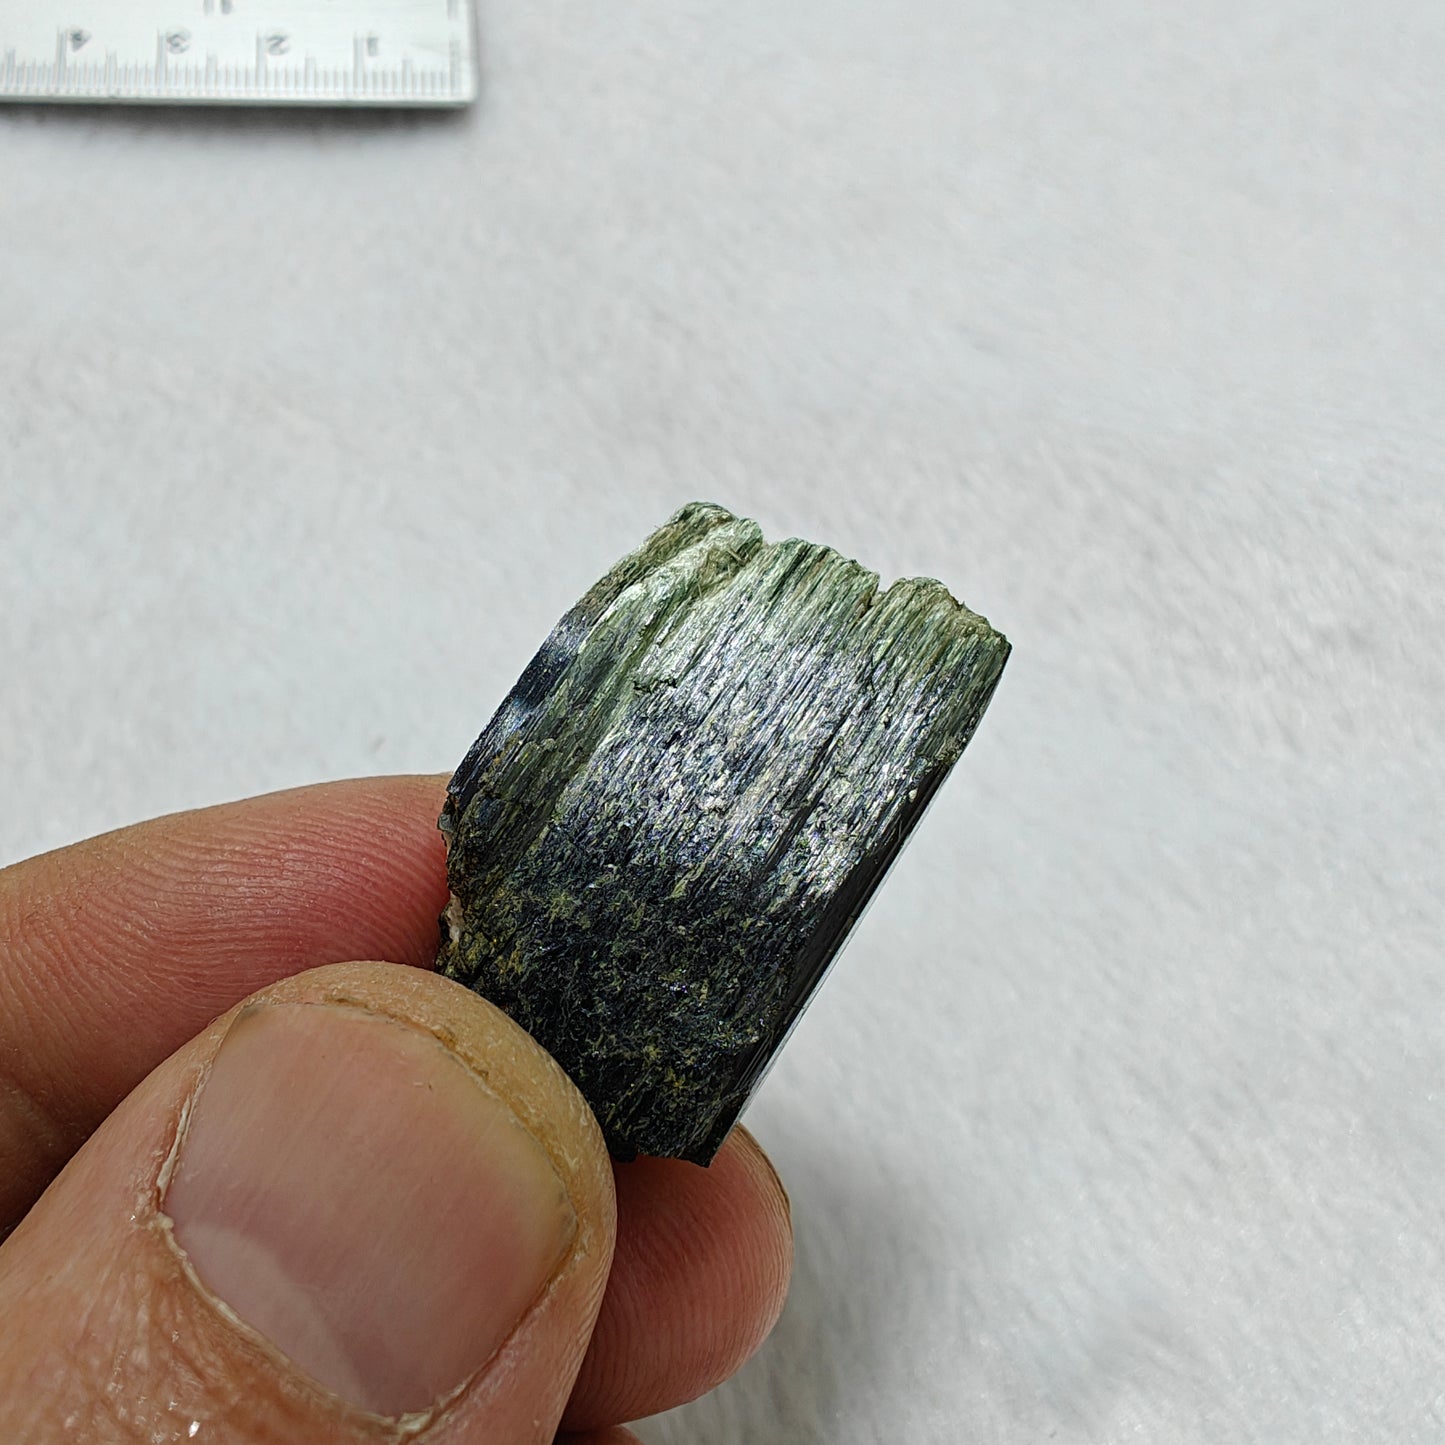 Natural aegirine crystal 15 grams